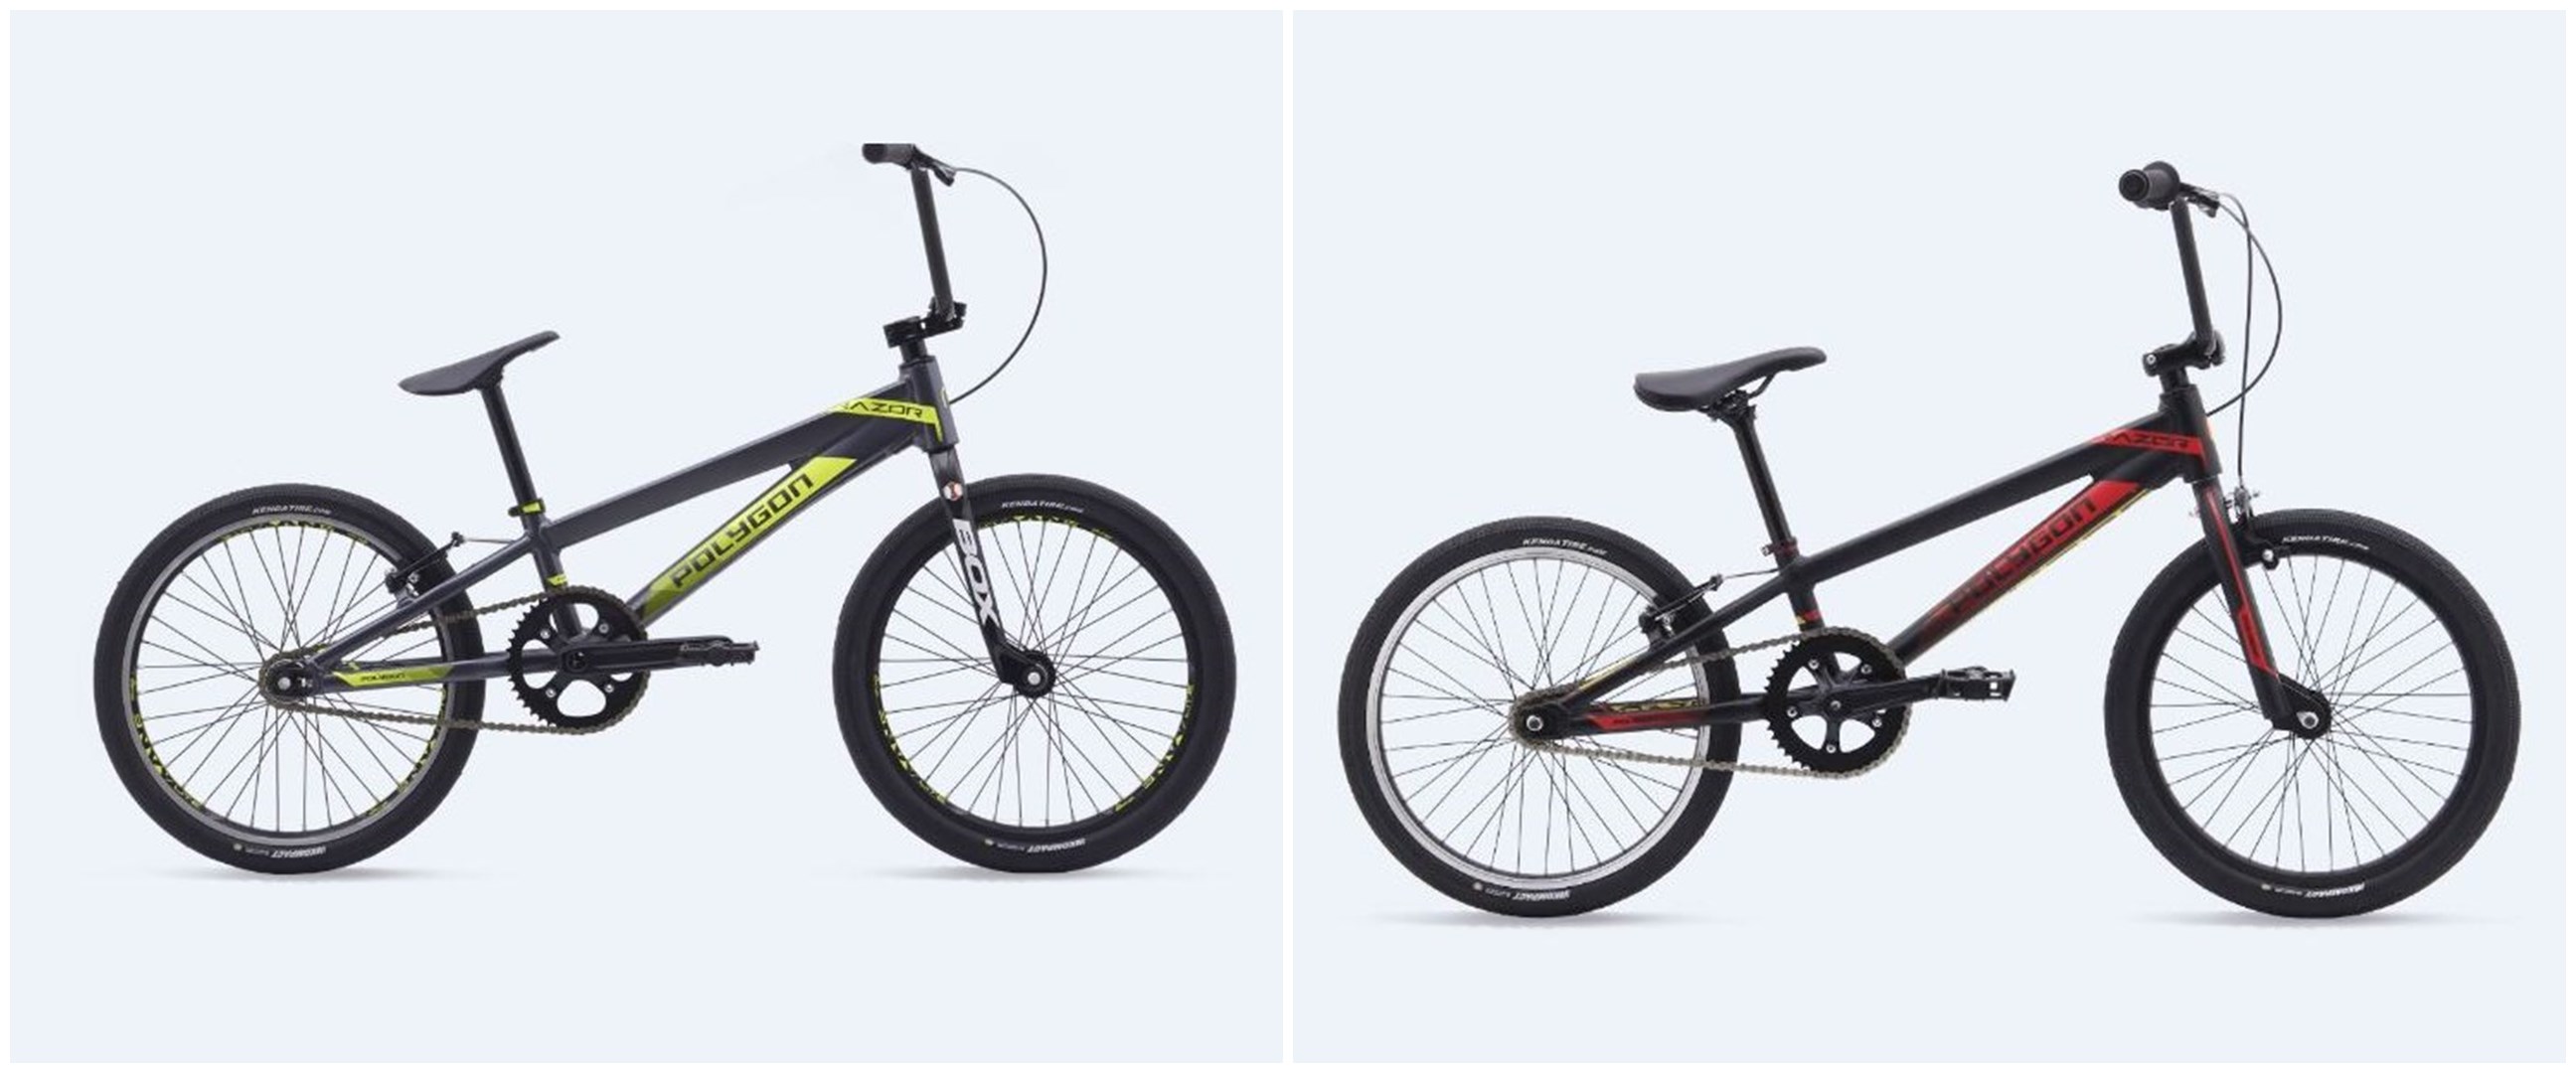 Harga sepeda Polygon BMX Razor dan spesifikasinya, gesit dan keren